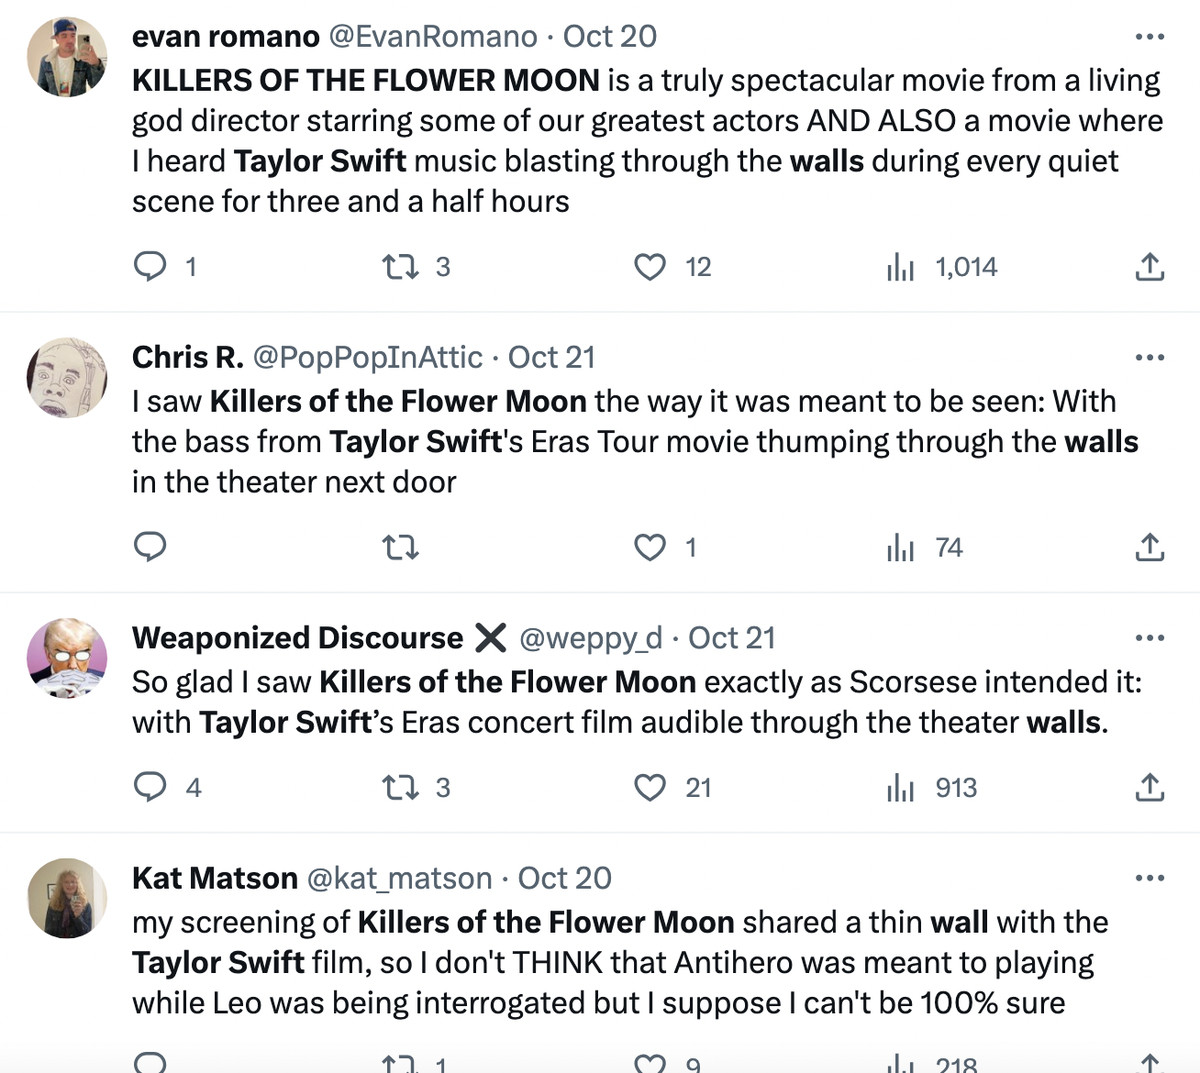 Ảnh chụp màn hình Twitter gồm bốn bài đăng khác nhau của những người phàn nàn hoặc nói đùa về việc rò rỉ âm thanh từ bộ phim của Taylor Swift làm nhạc nền cho chương trình Killers of the Flower Moon của họ